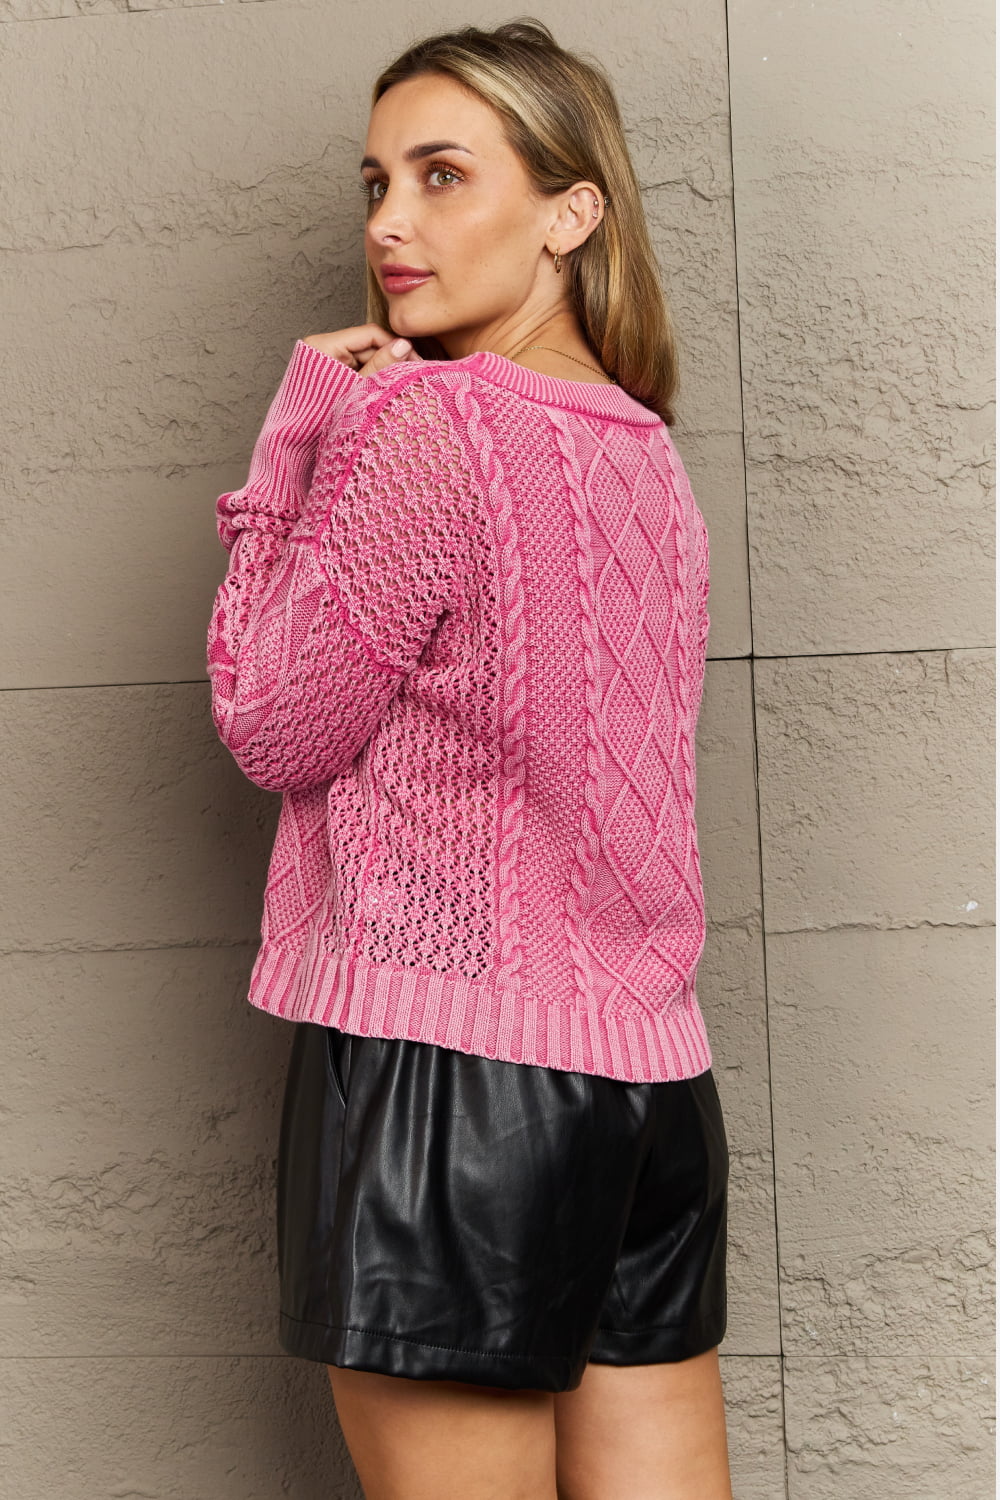 Malibu Dreams HEYSON Soft Focus Full Size Wash Cable Knit Cardigan in Fuchsia